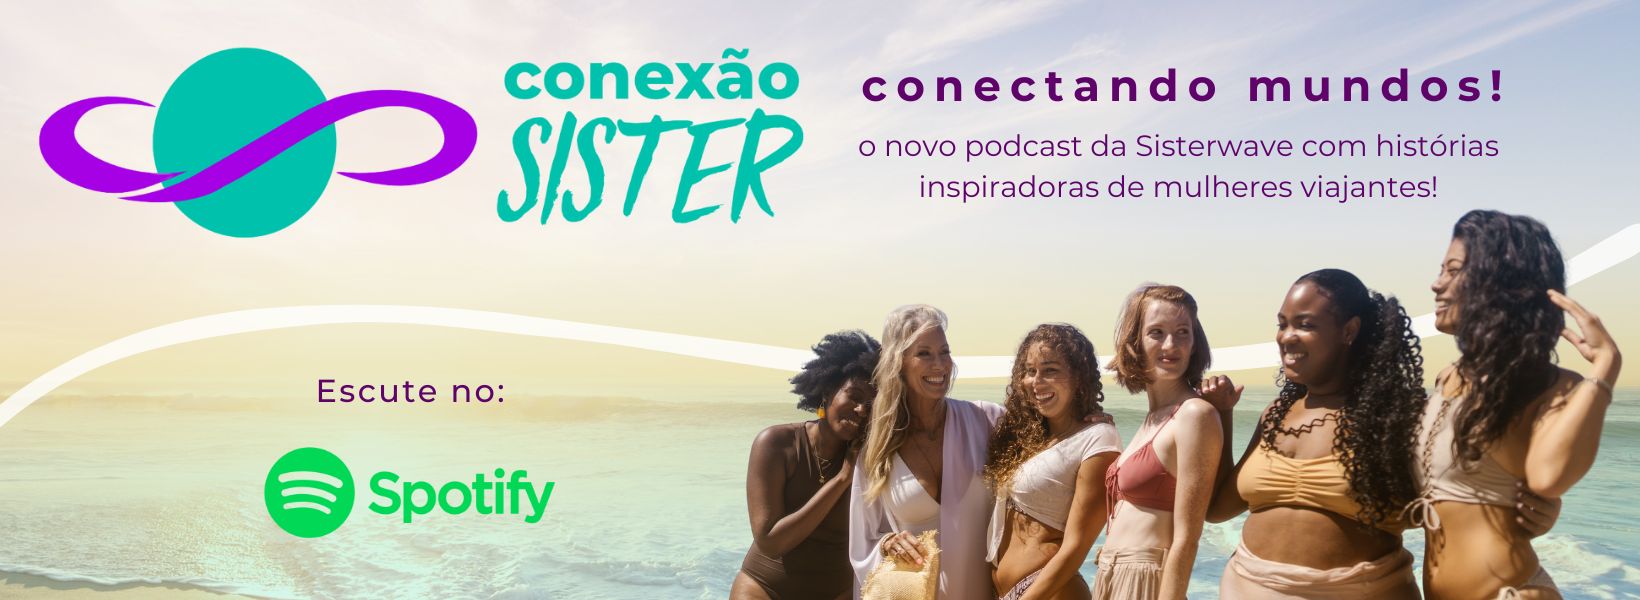 Escute o Conexão Sister no Spotify